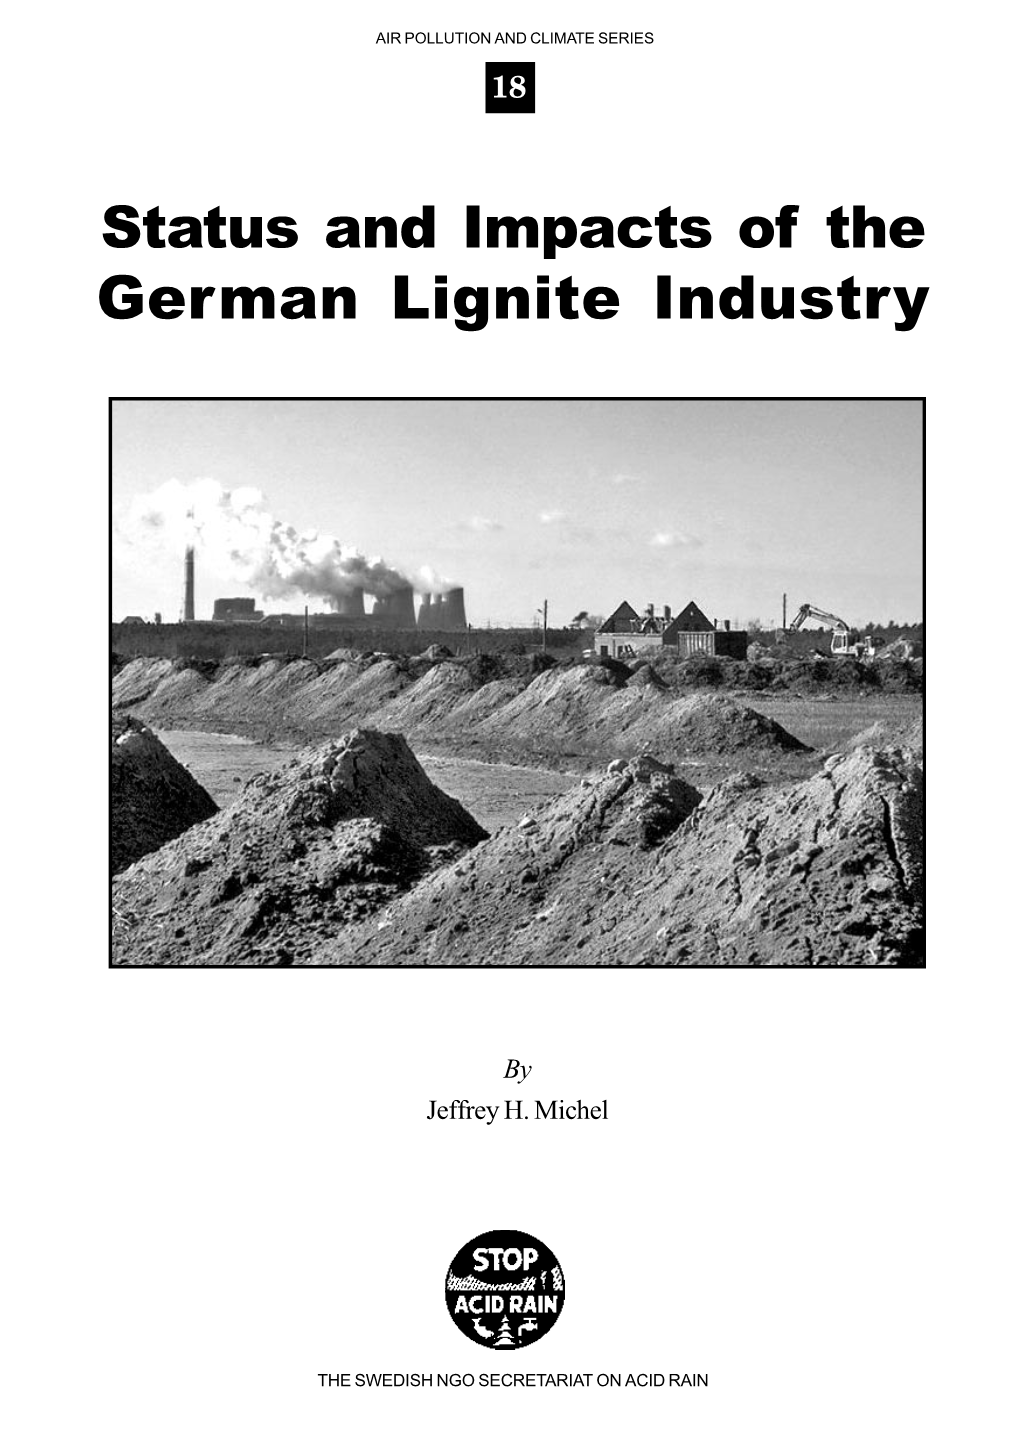 German Lignite Industry